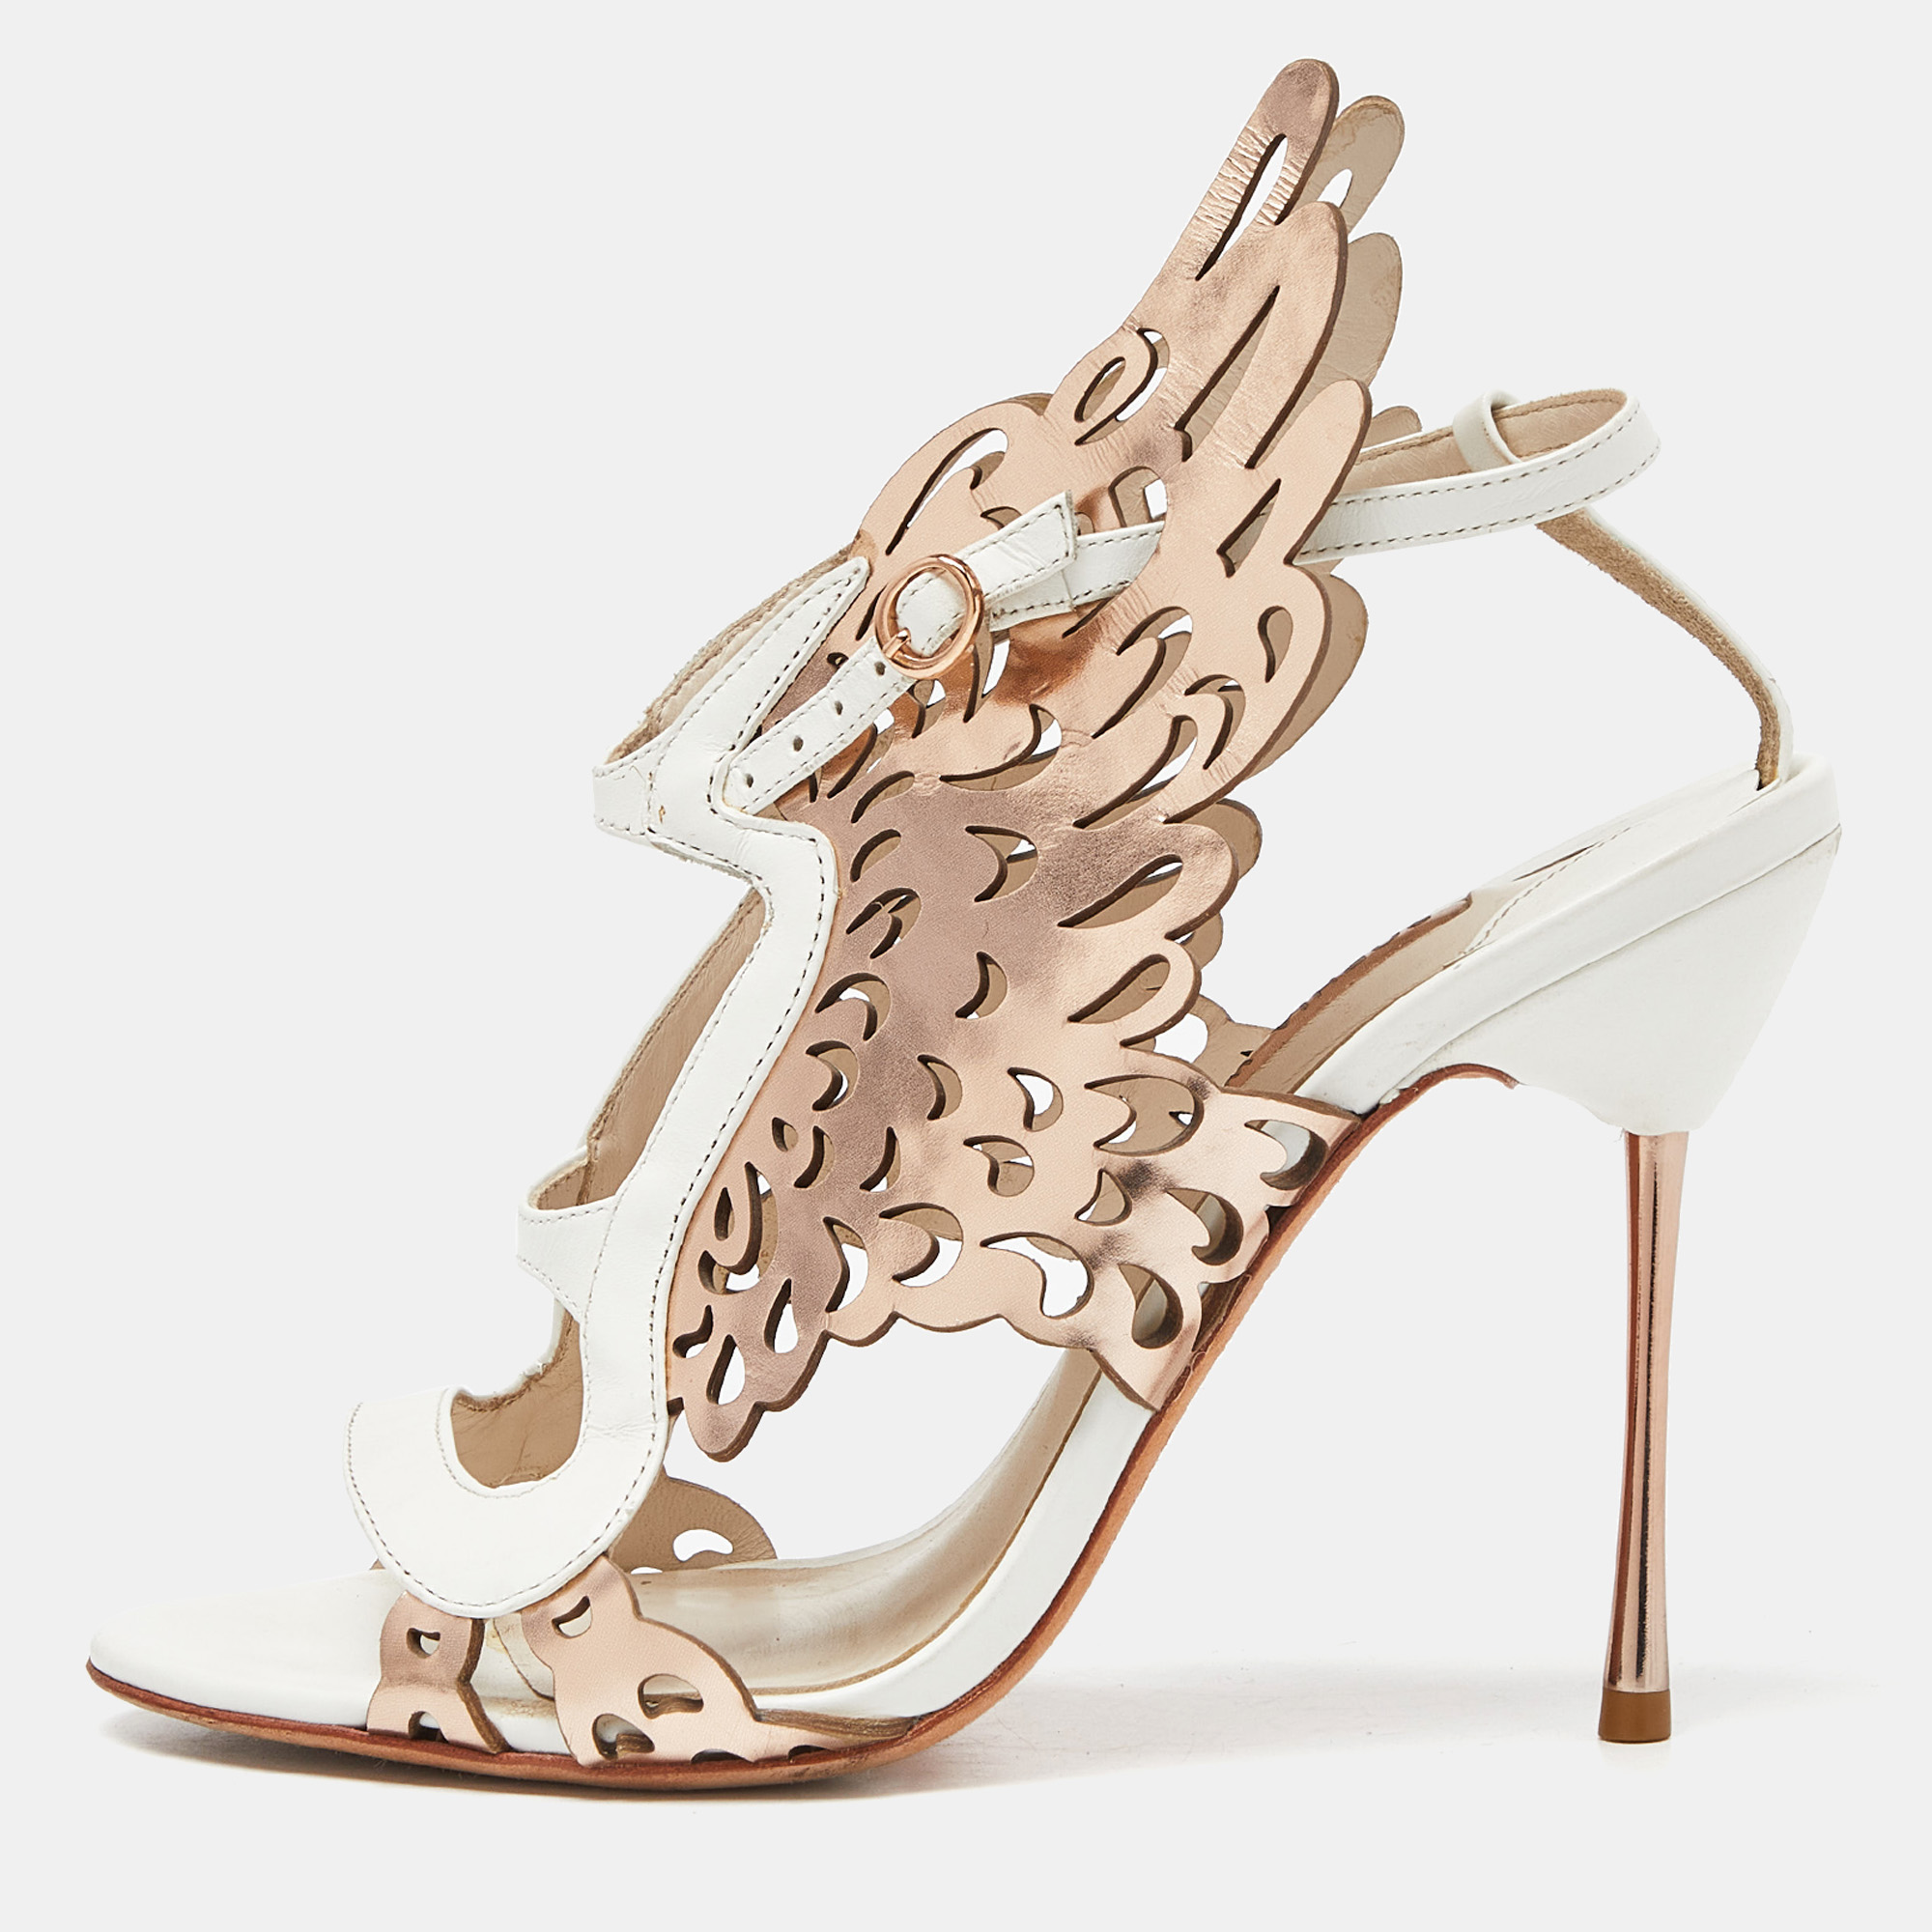 Sophia webster gold/white leather evangeline laser cut angel wing ankle strap sandals size 39